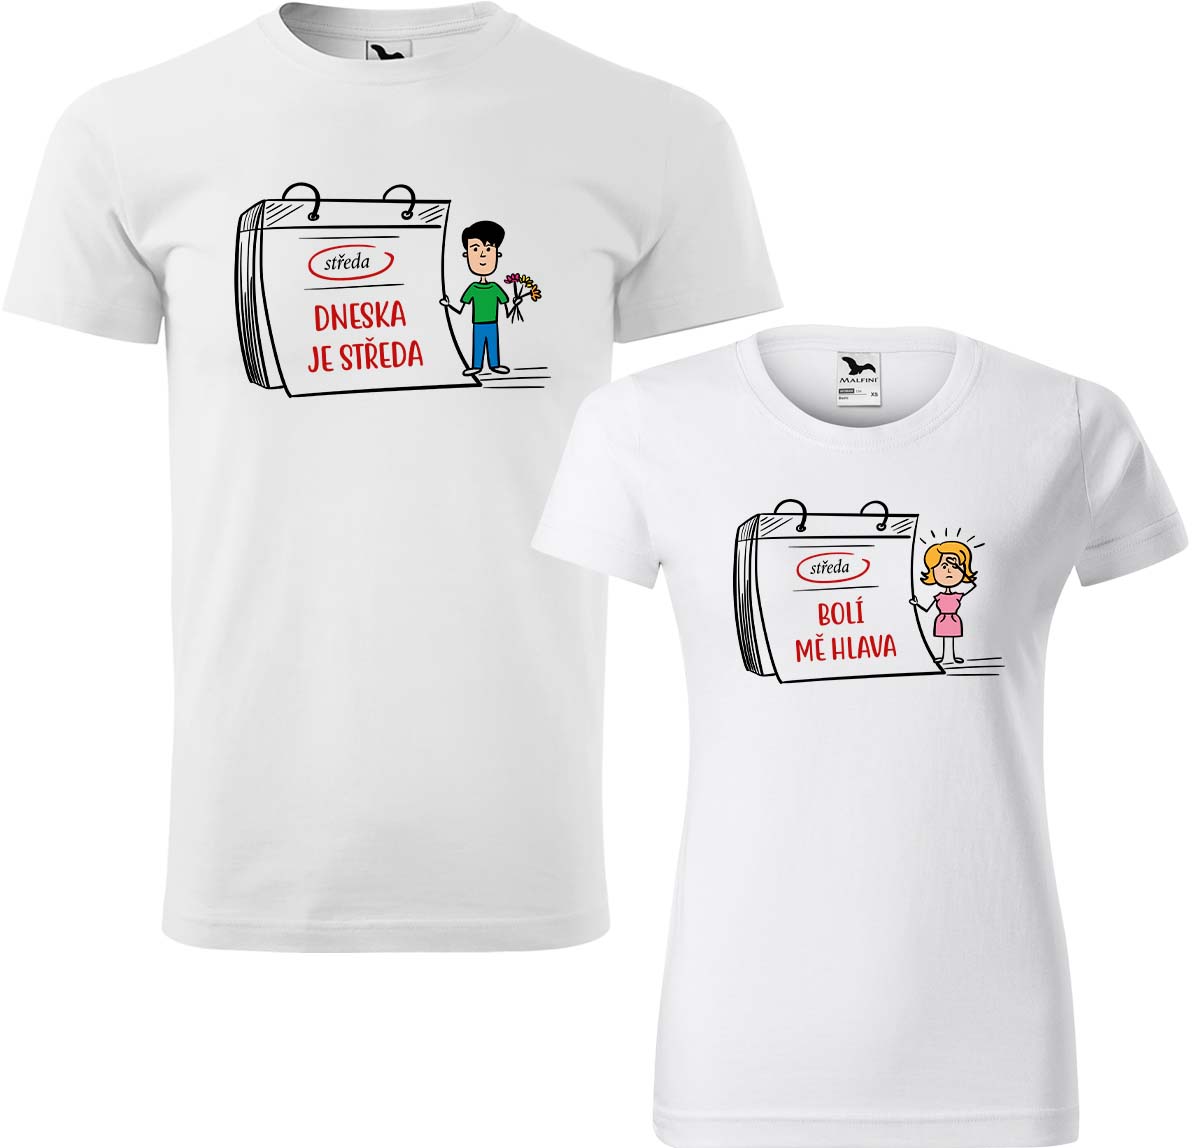 Trička pro páry - Dneska je středa Barva: Bílá (00), Velikost dámské tričko: XL, Velikost pánské tričko: XL